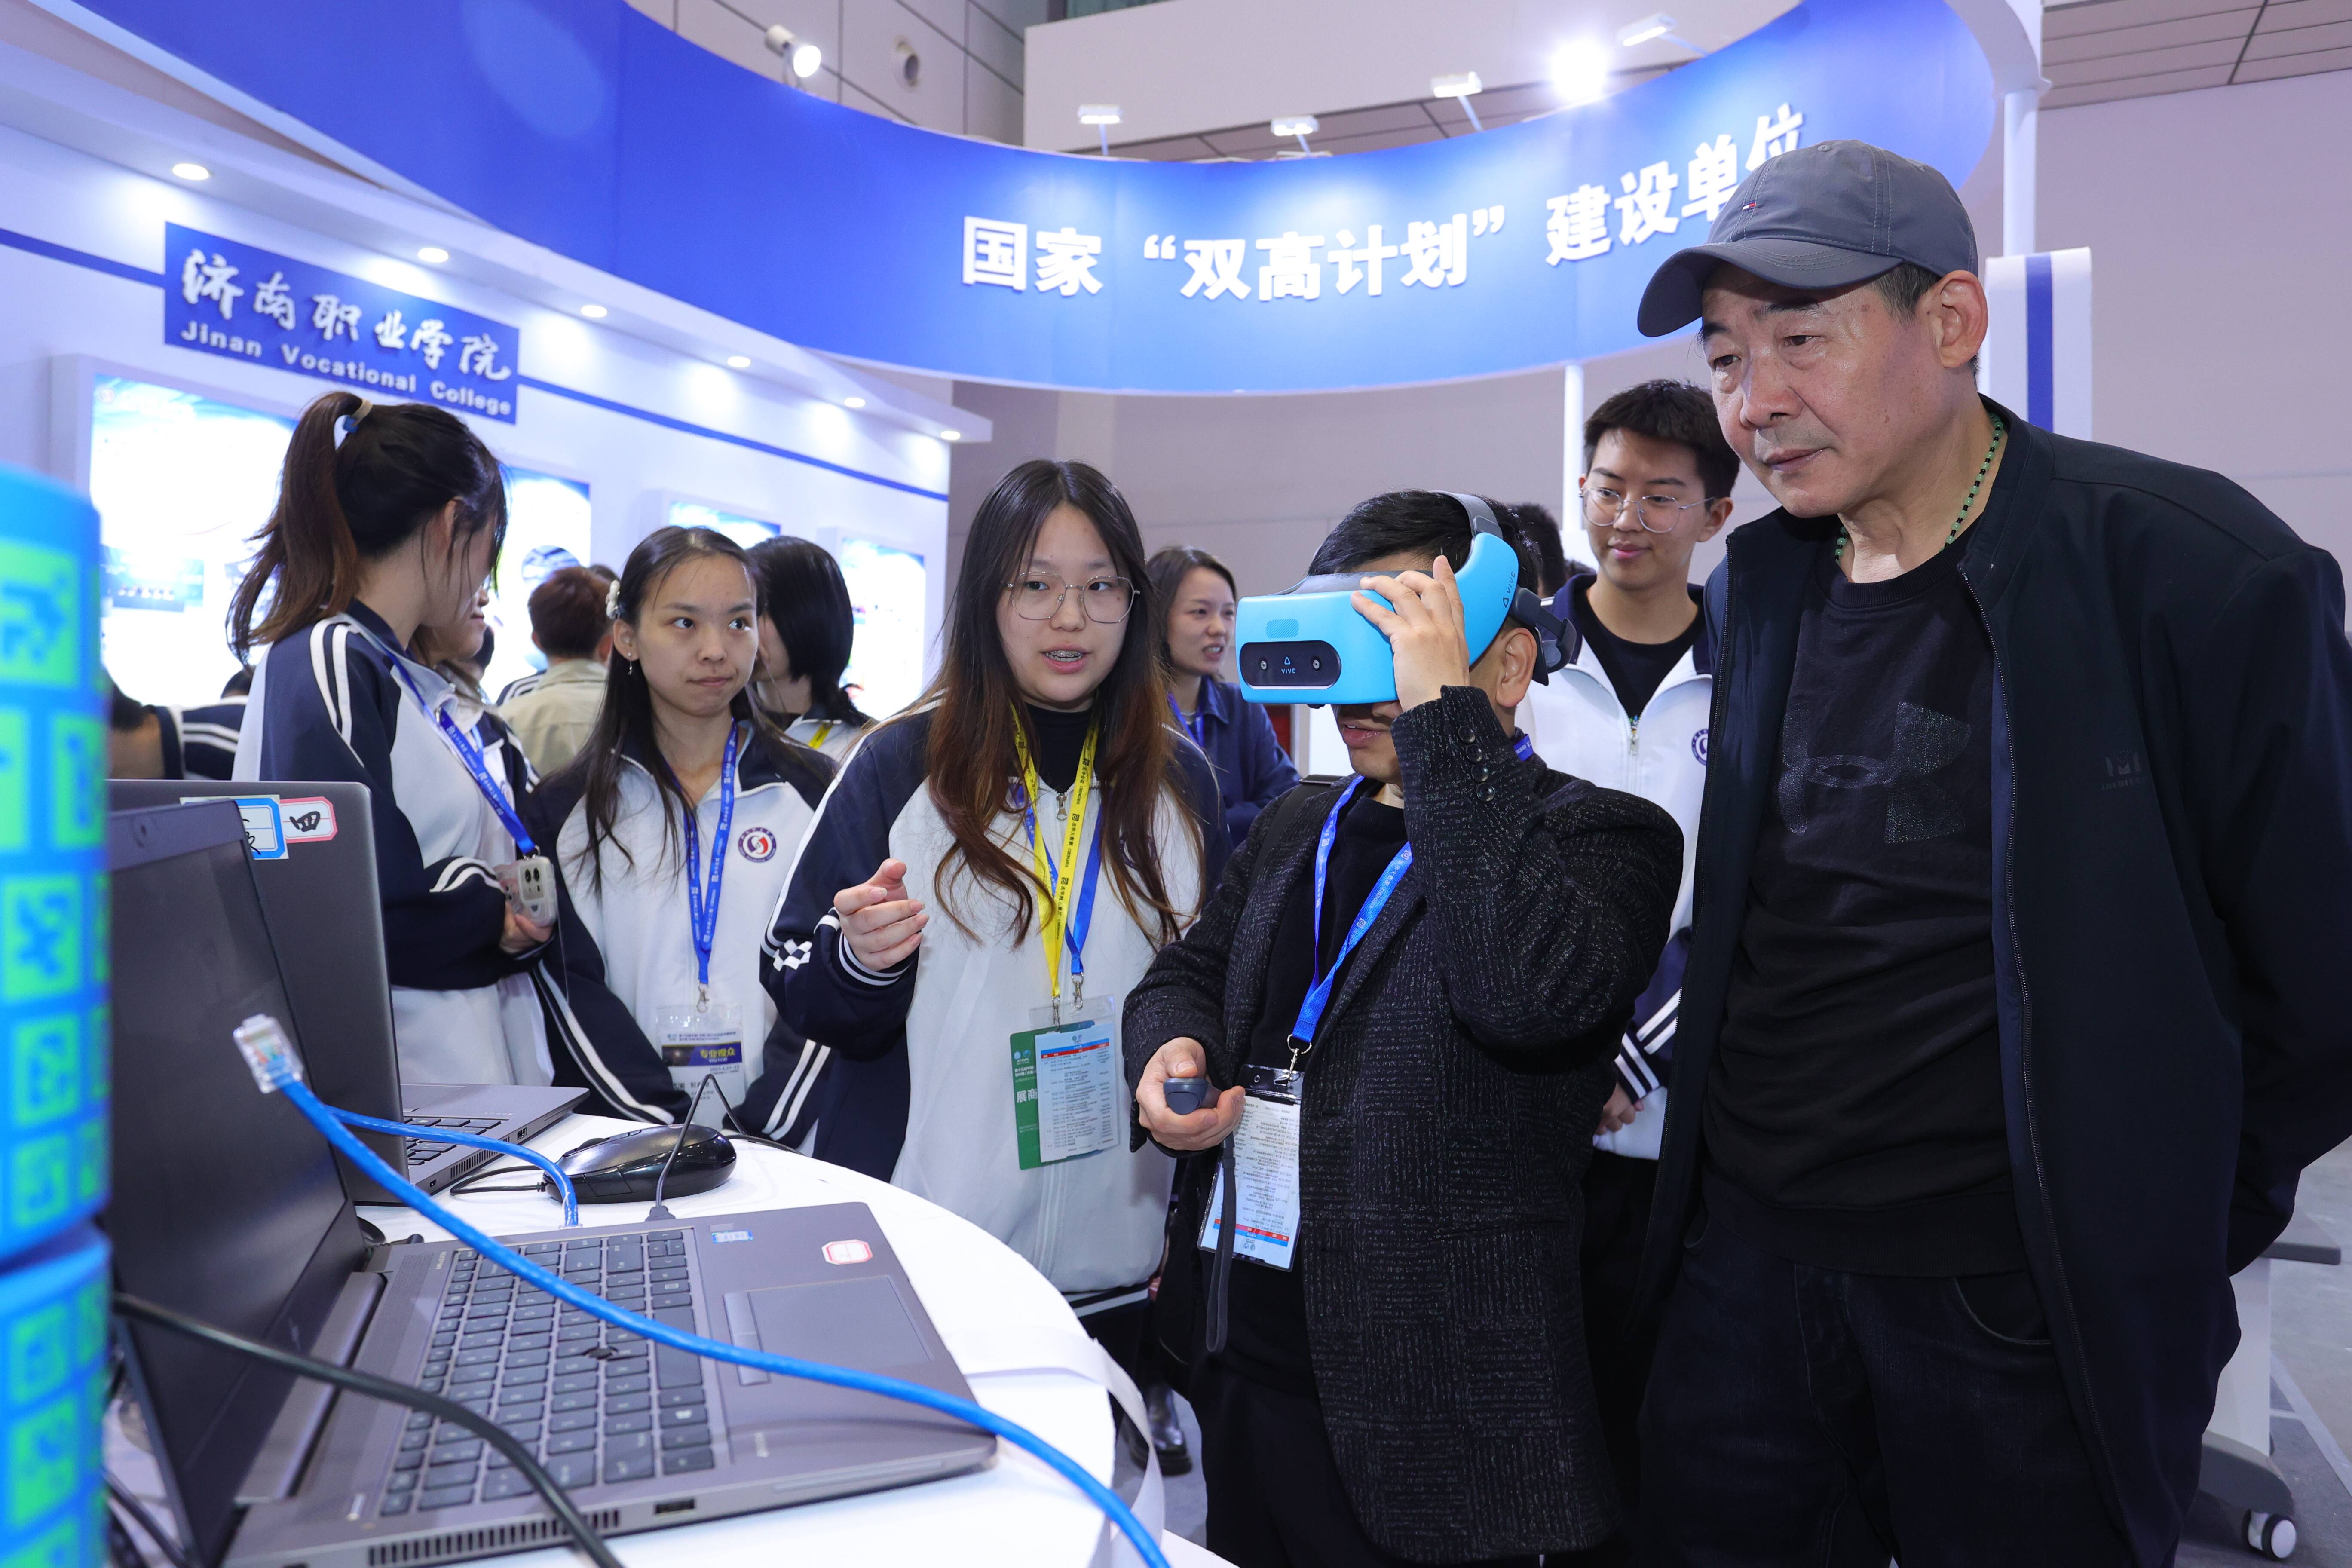 元宇宙等硬核科技纷纷亮相 第十五届中国·济南信息技术博览会开幕